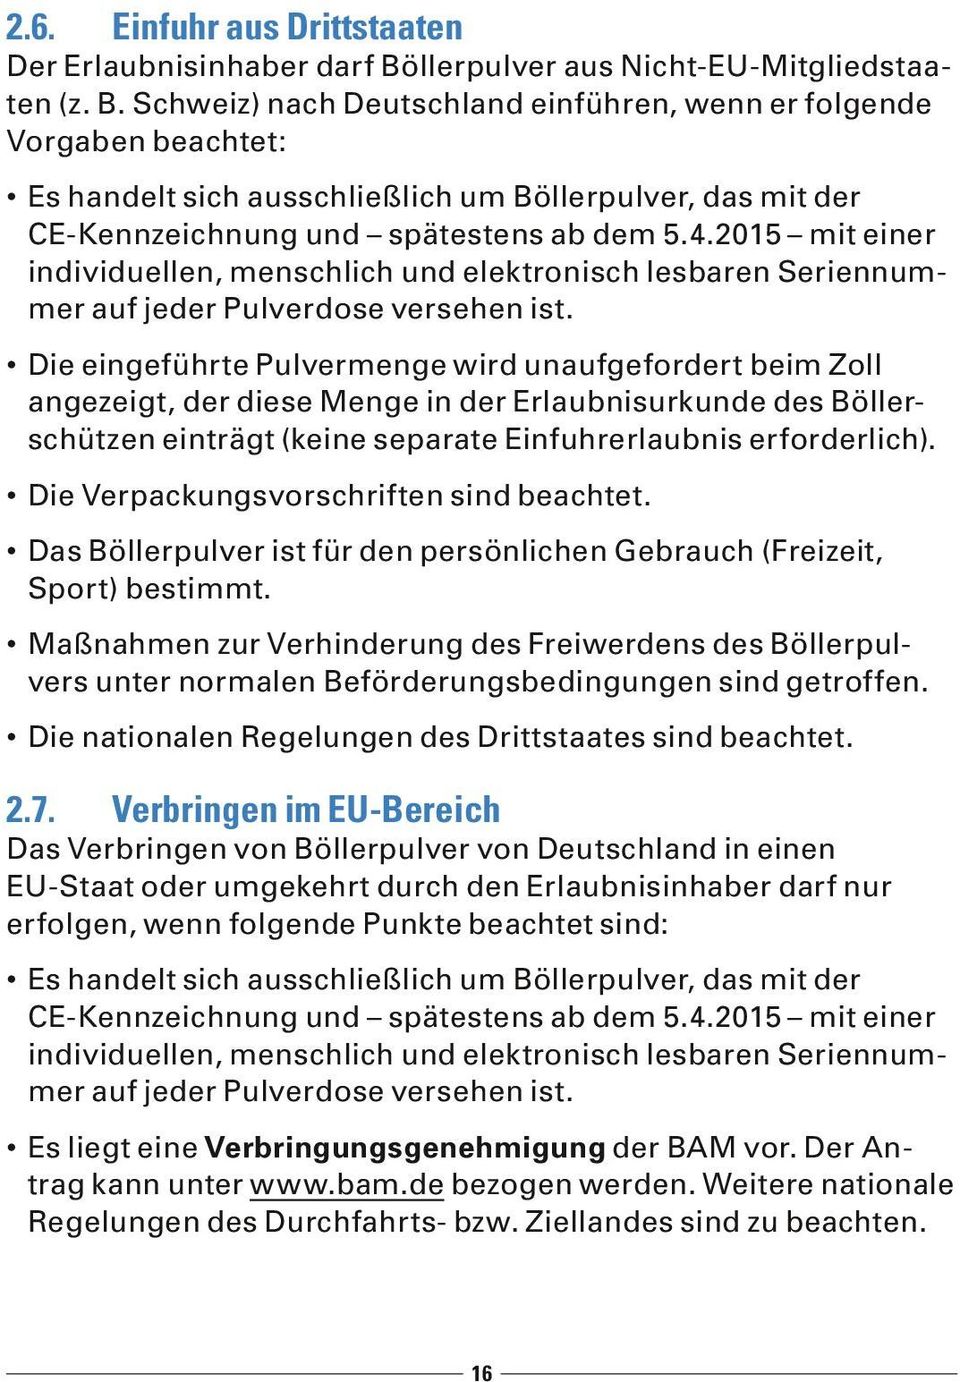 Schweiz) nach Deutschland einführen, wenn er folgende Vorgaben beachtet: Es handelt sich ausschließlich um Böllerpulver, das mit der CE-Kennzeichnung und spätestens ab dem 5.4.